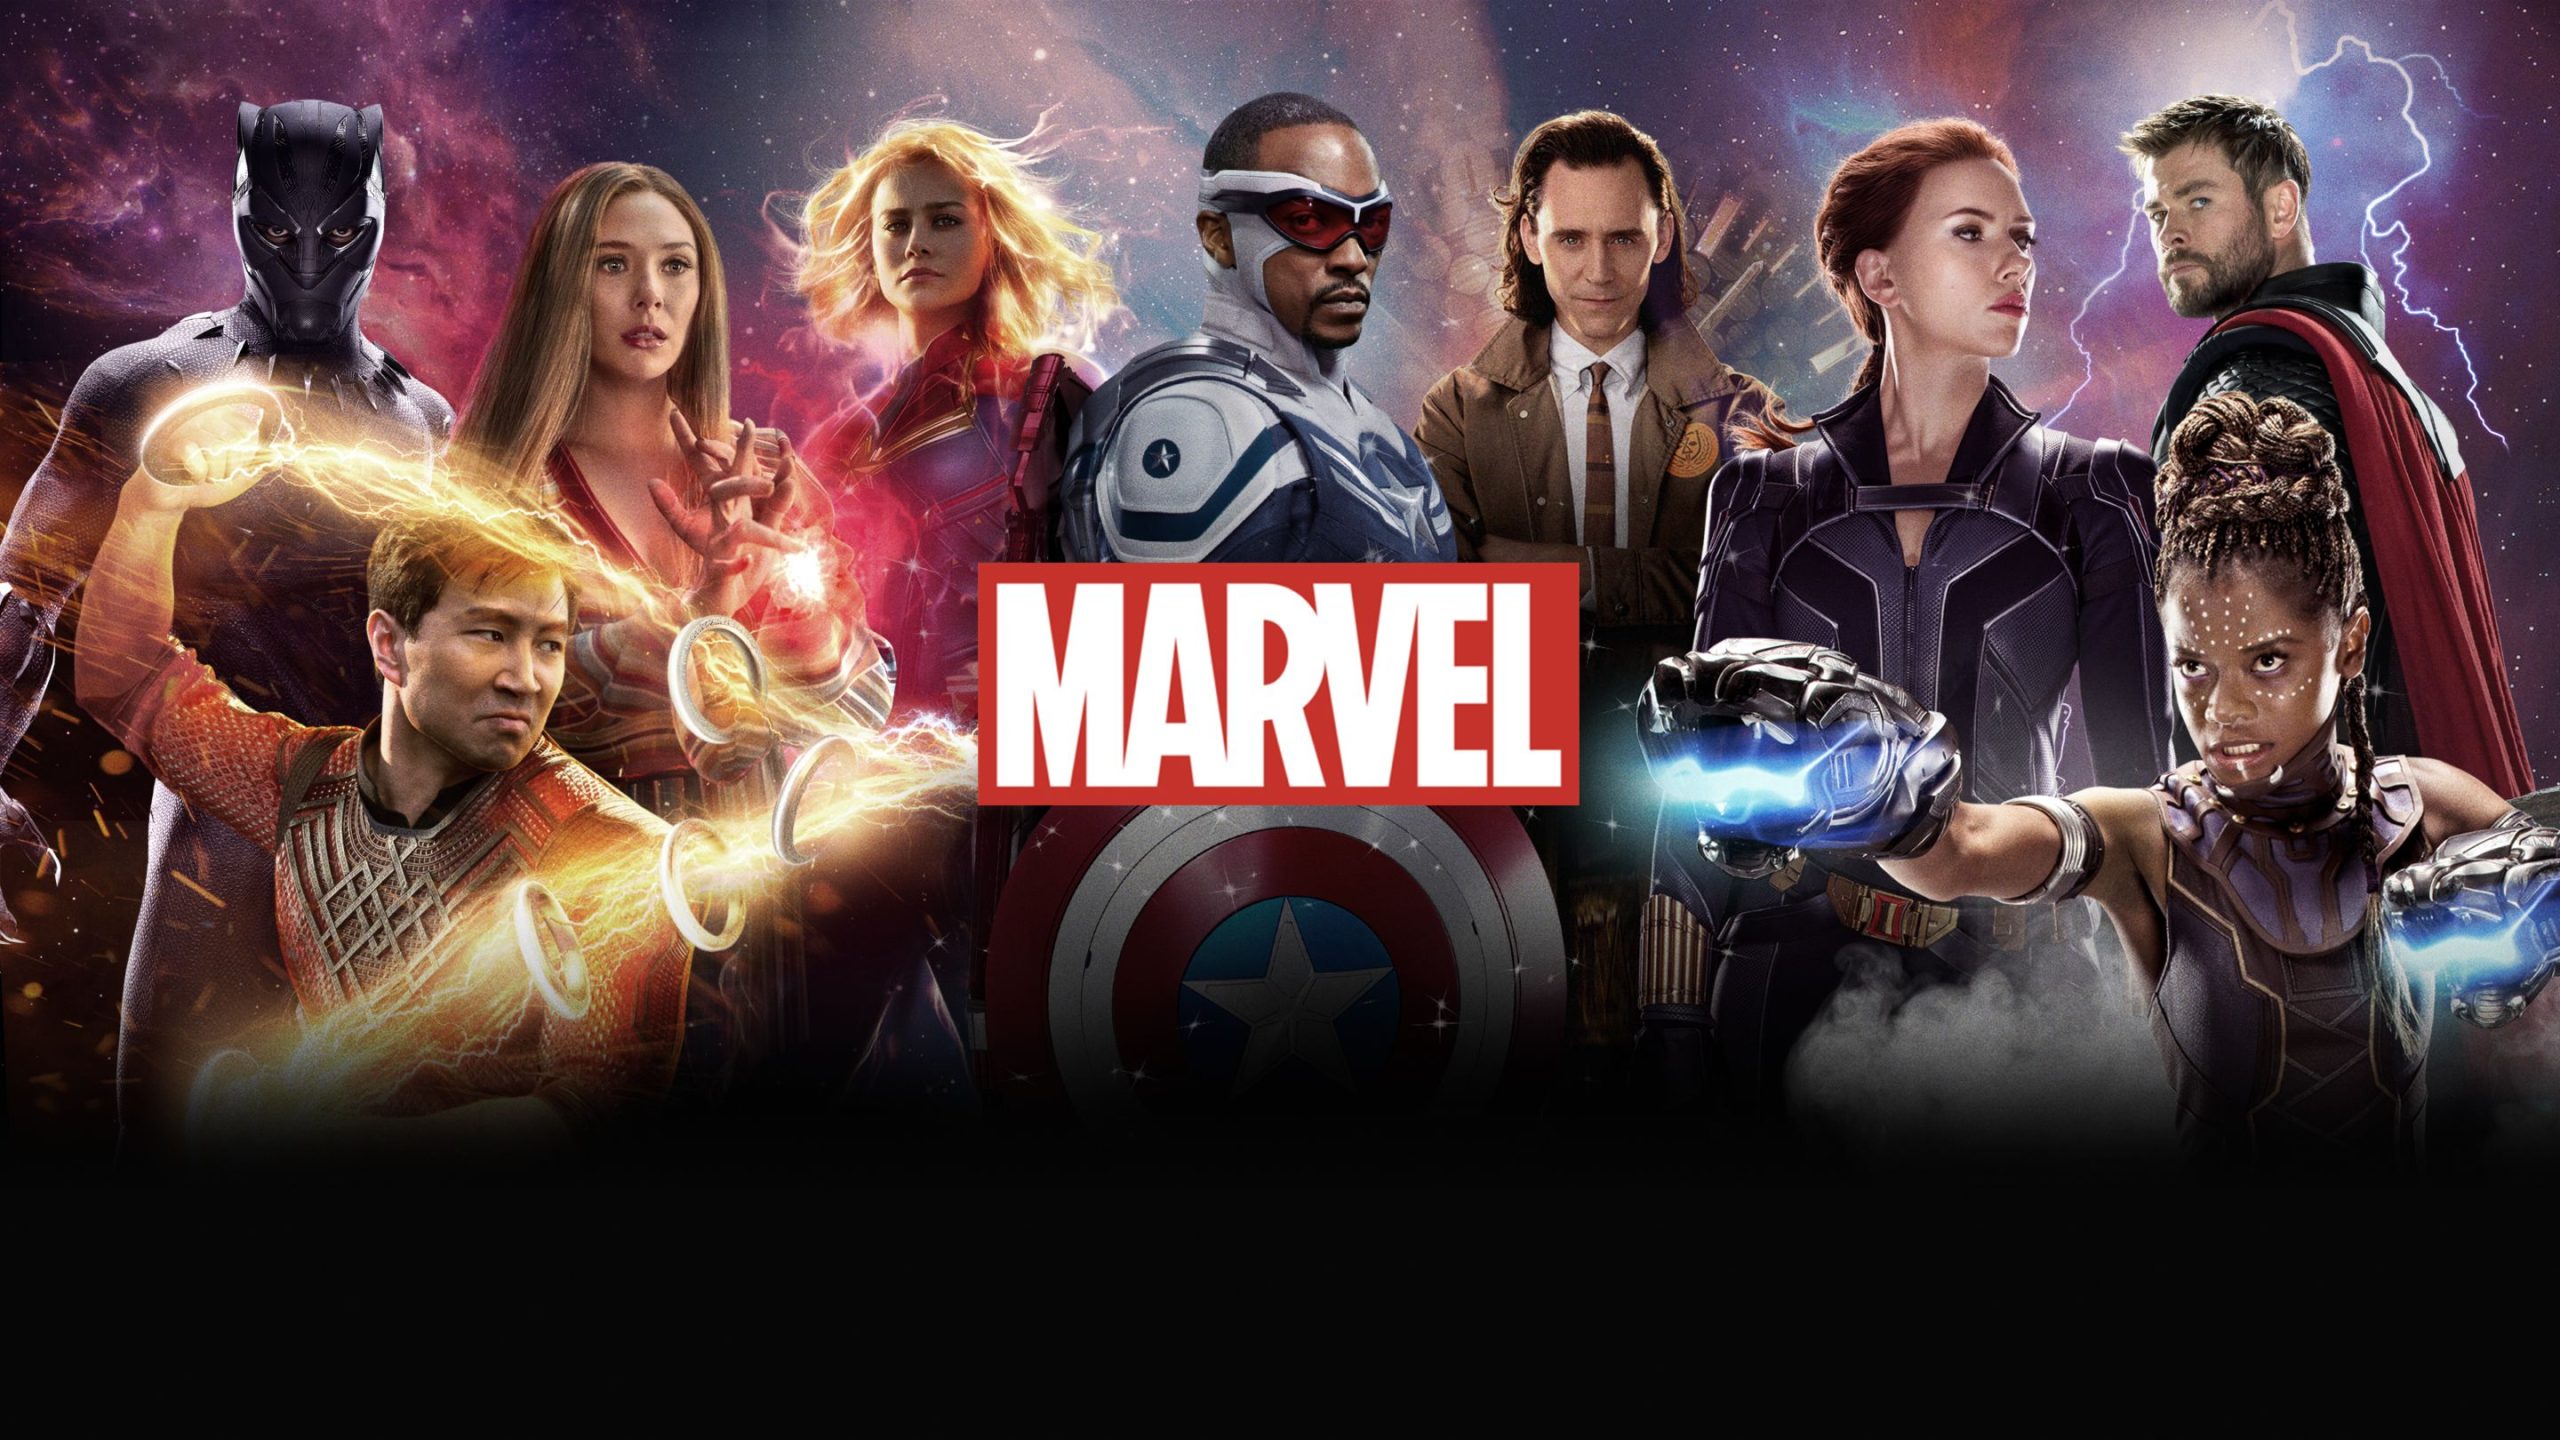 Marvel studios is backed by a loyal fan base. 